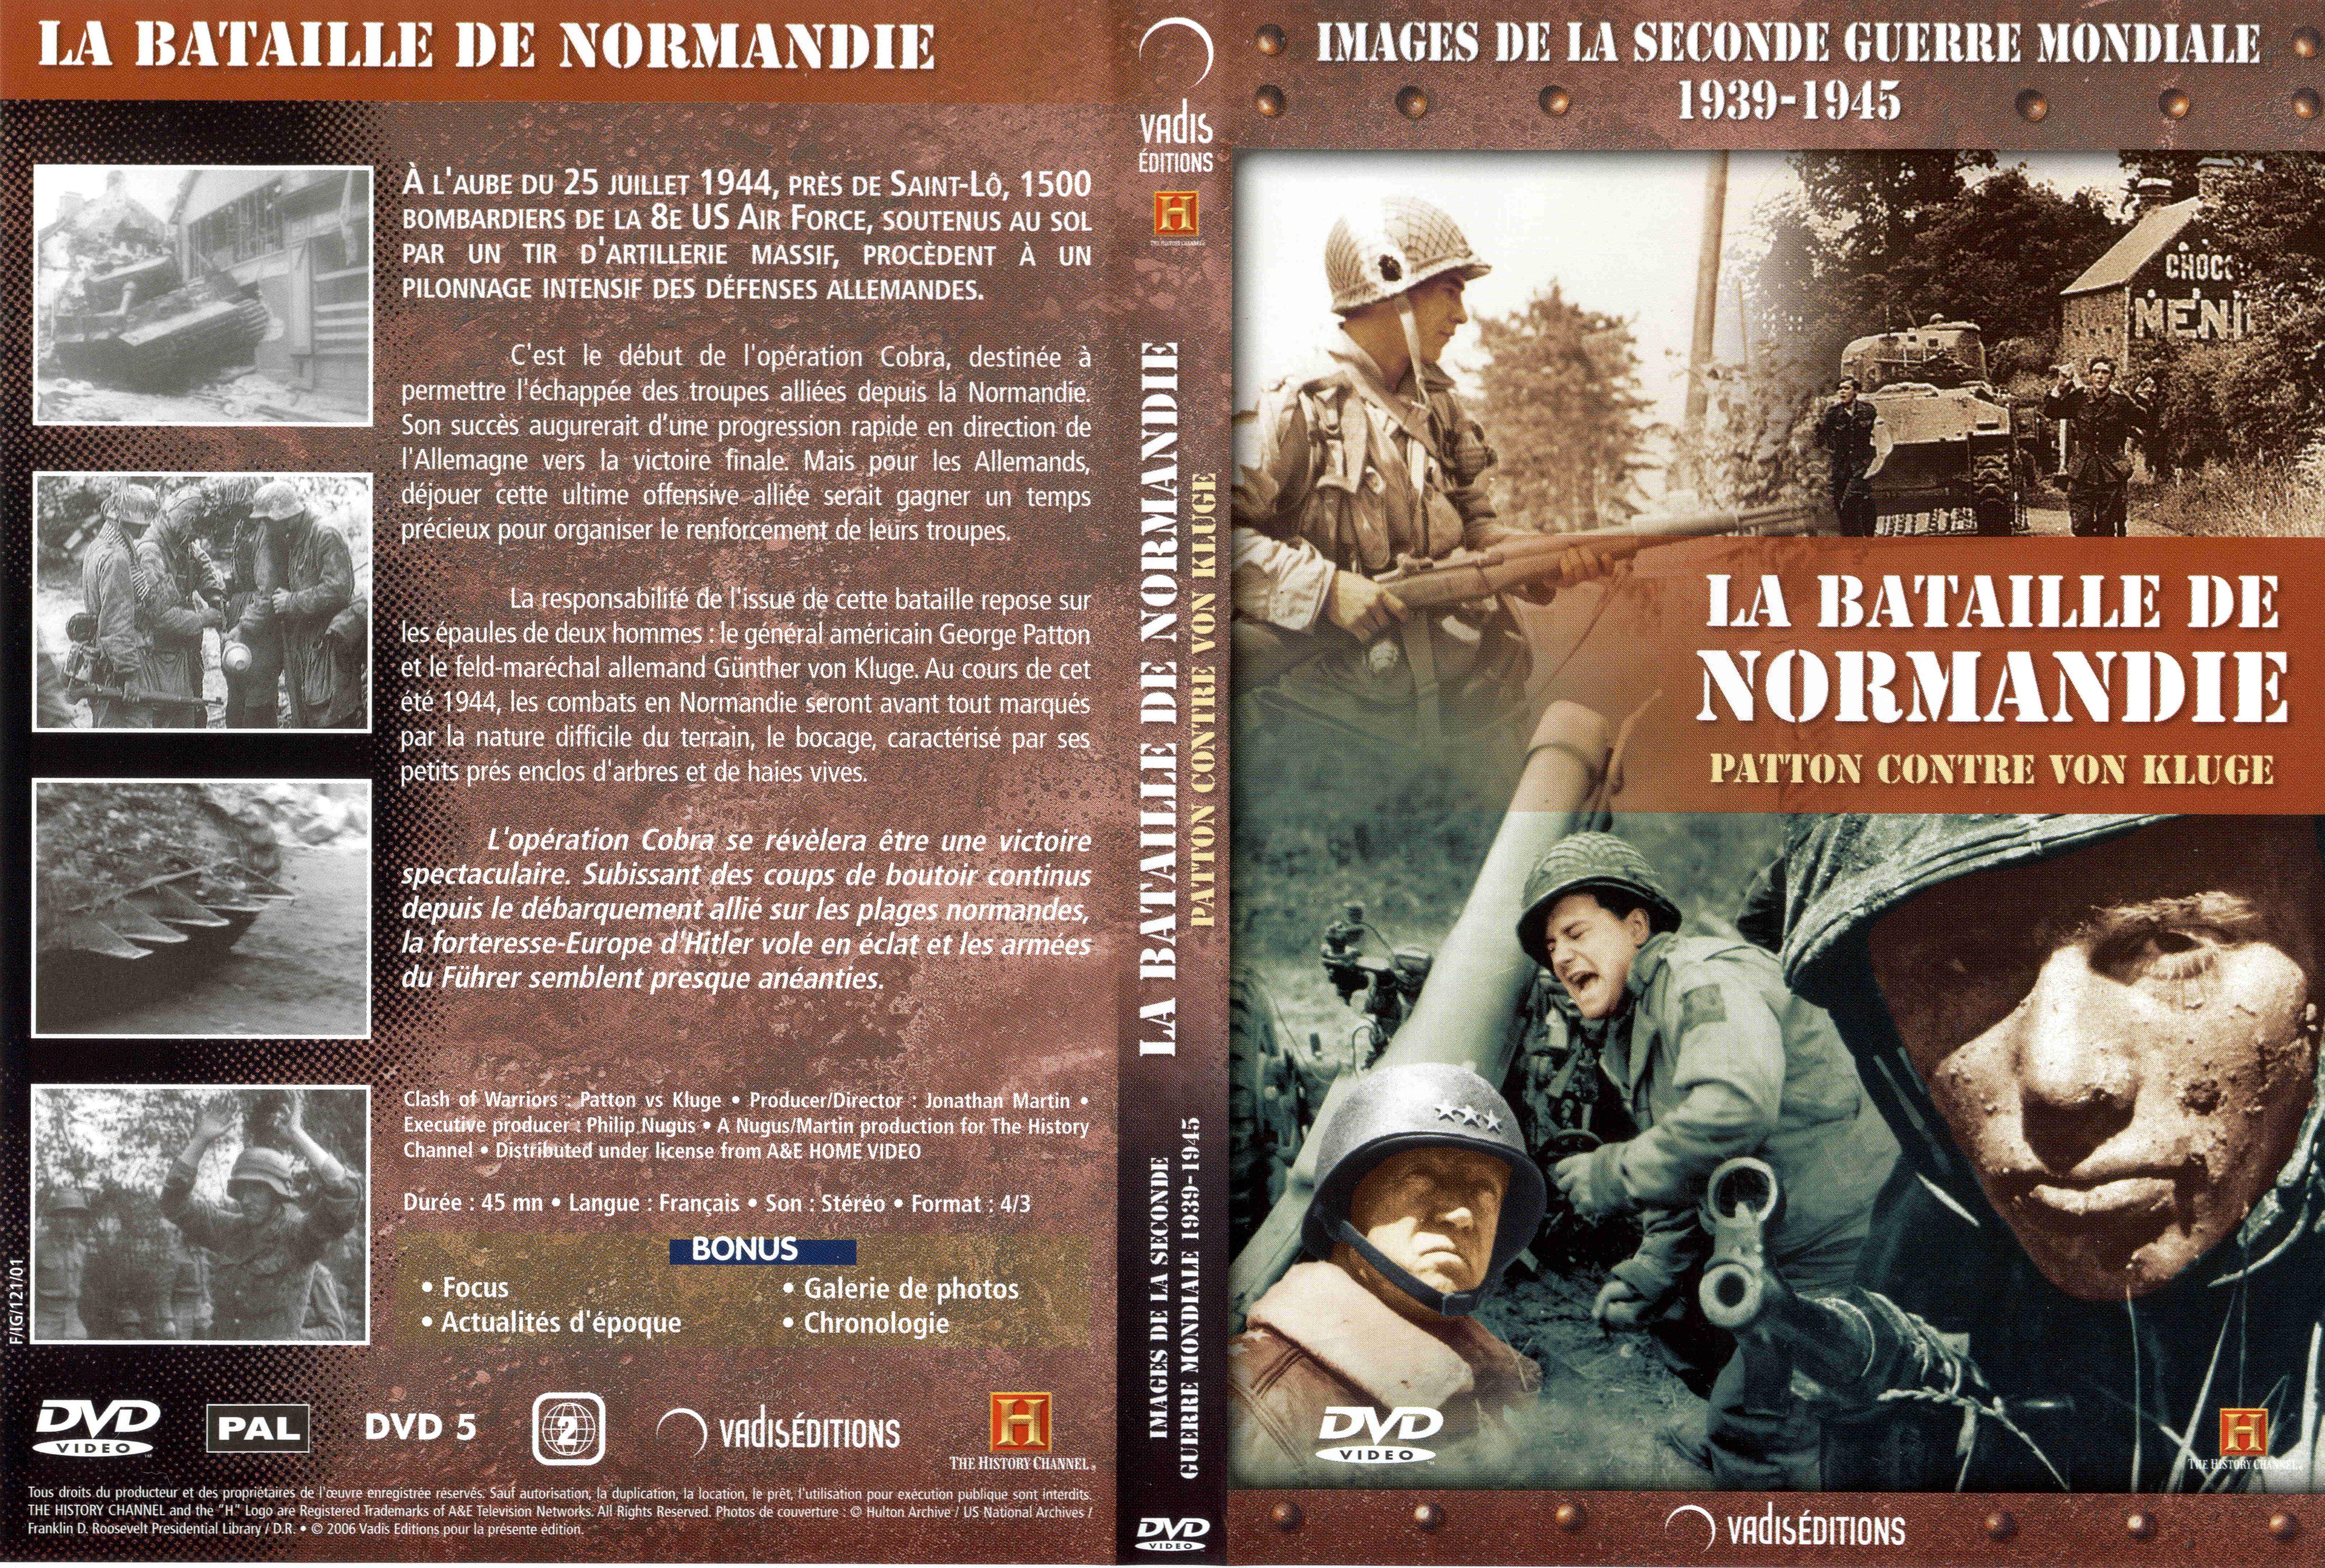 Jaquette DVD Images de la seconde guerre mondiale - La bataille de normandie